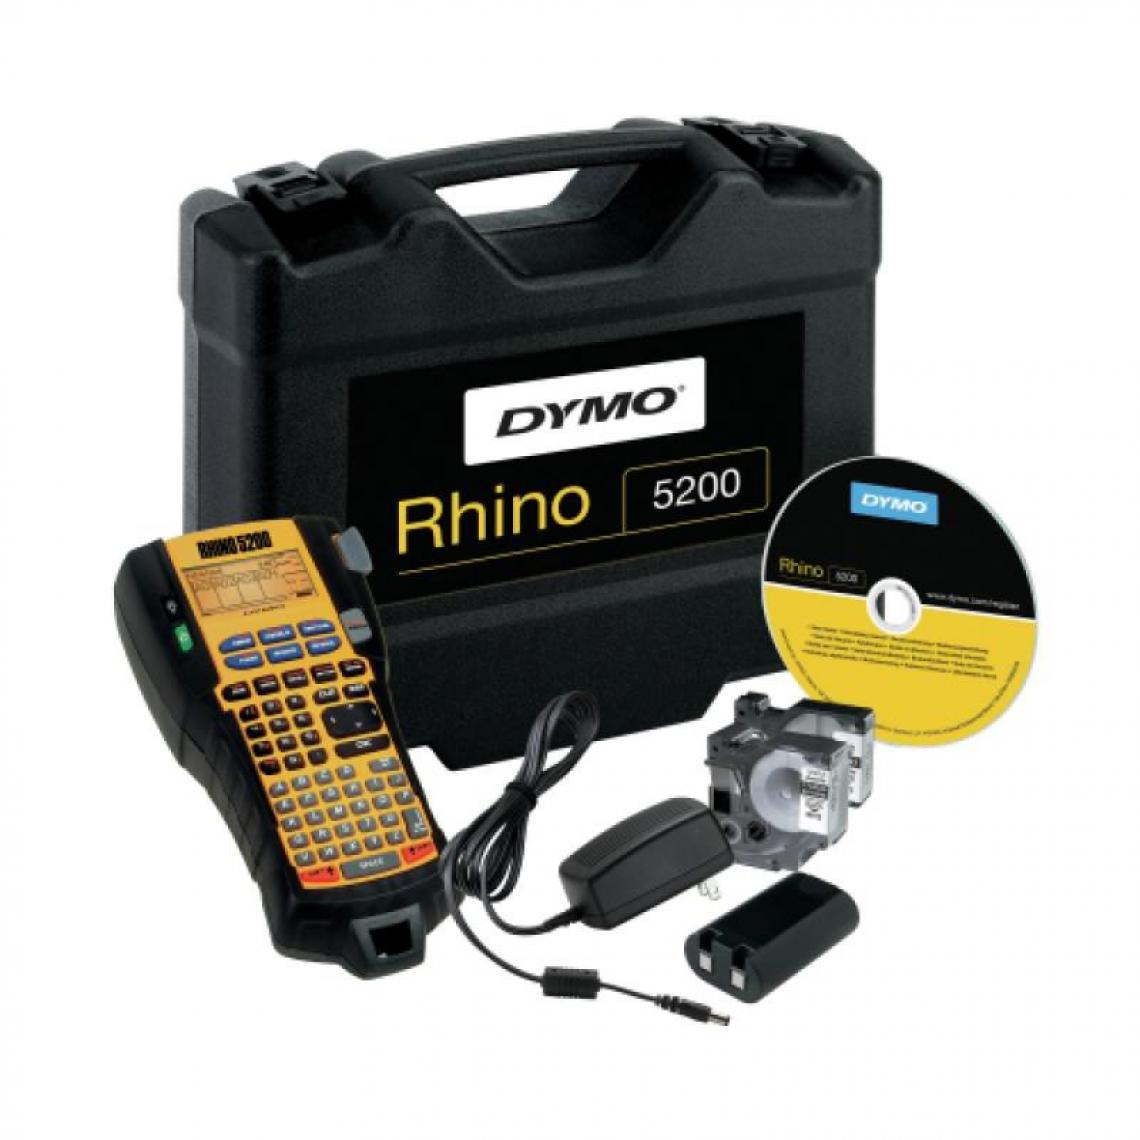 Dymo - Kit mallette Rhino 5200, 2 rubans N/B 12mm et 19mm, 1 batterie rechargeable + - Ruban pour étiqueteuse